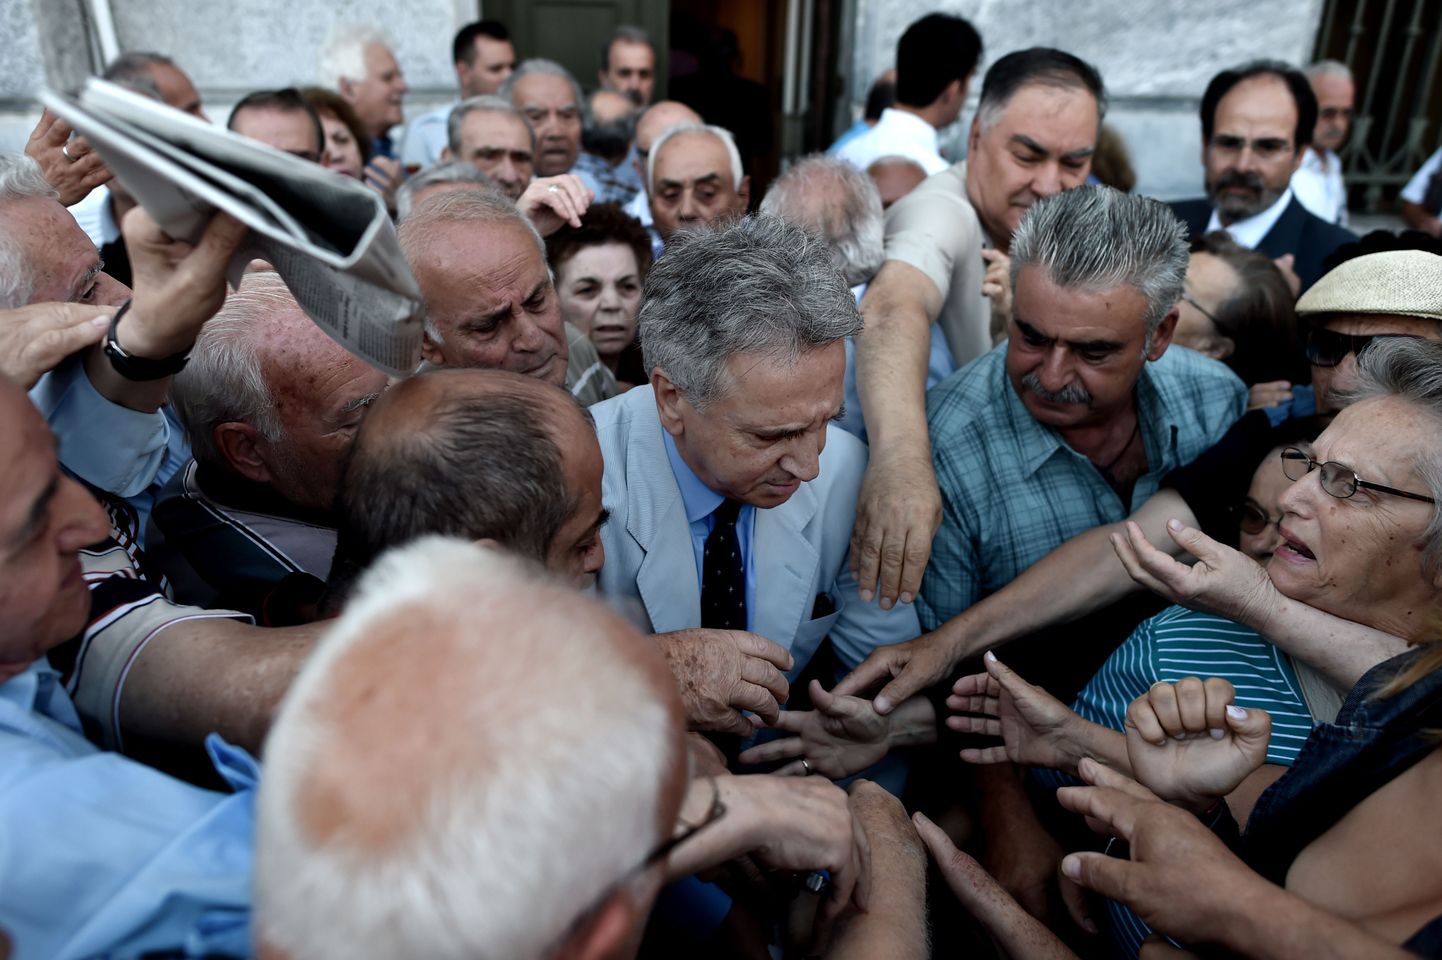 Kreeka pangad avasid täna uksed pensionäridele, kes saavad võtta välja kuni 120 eurot pensionit.